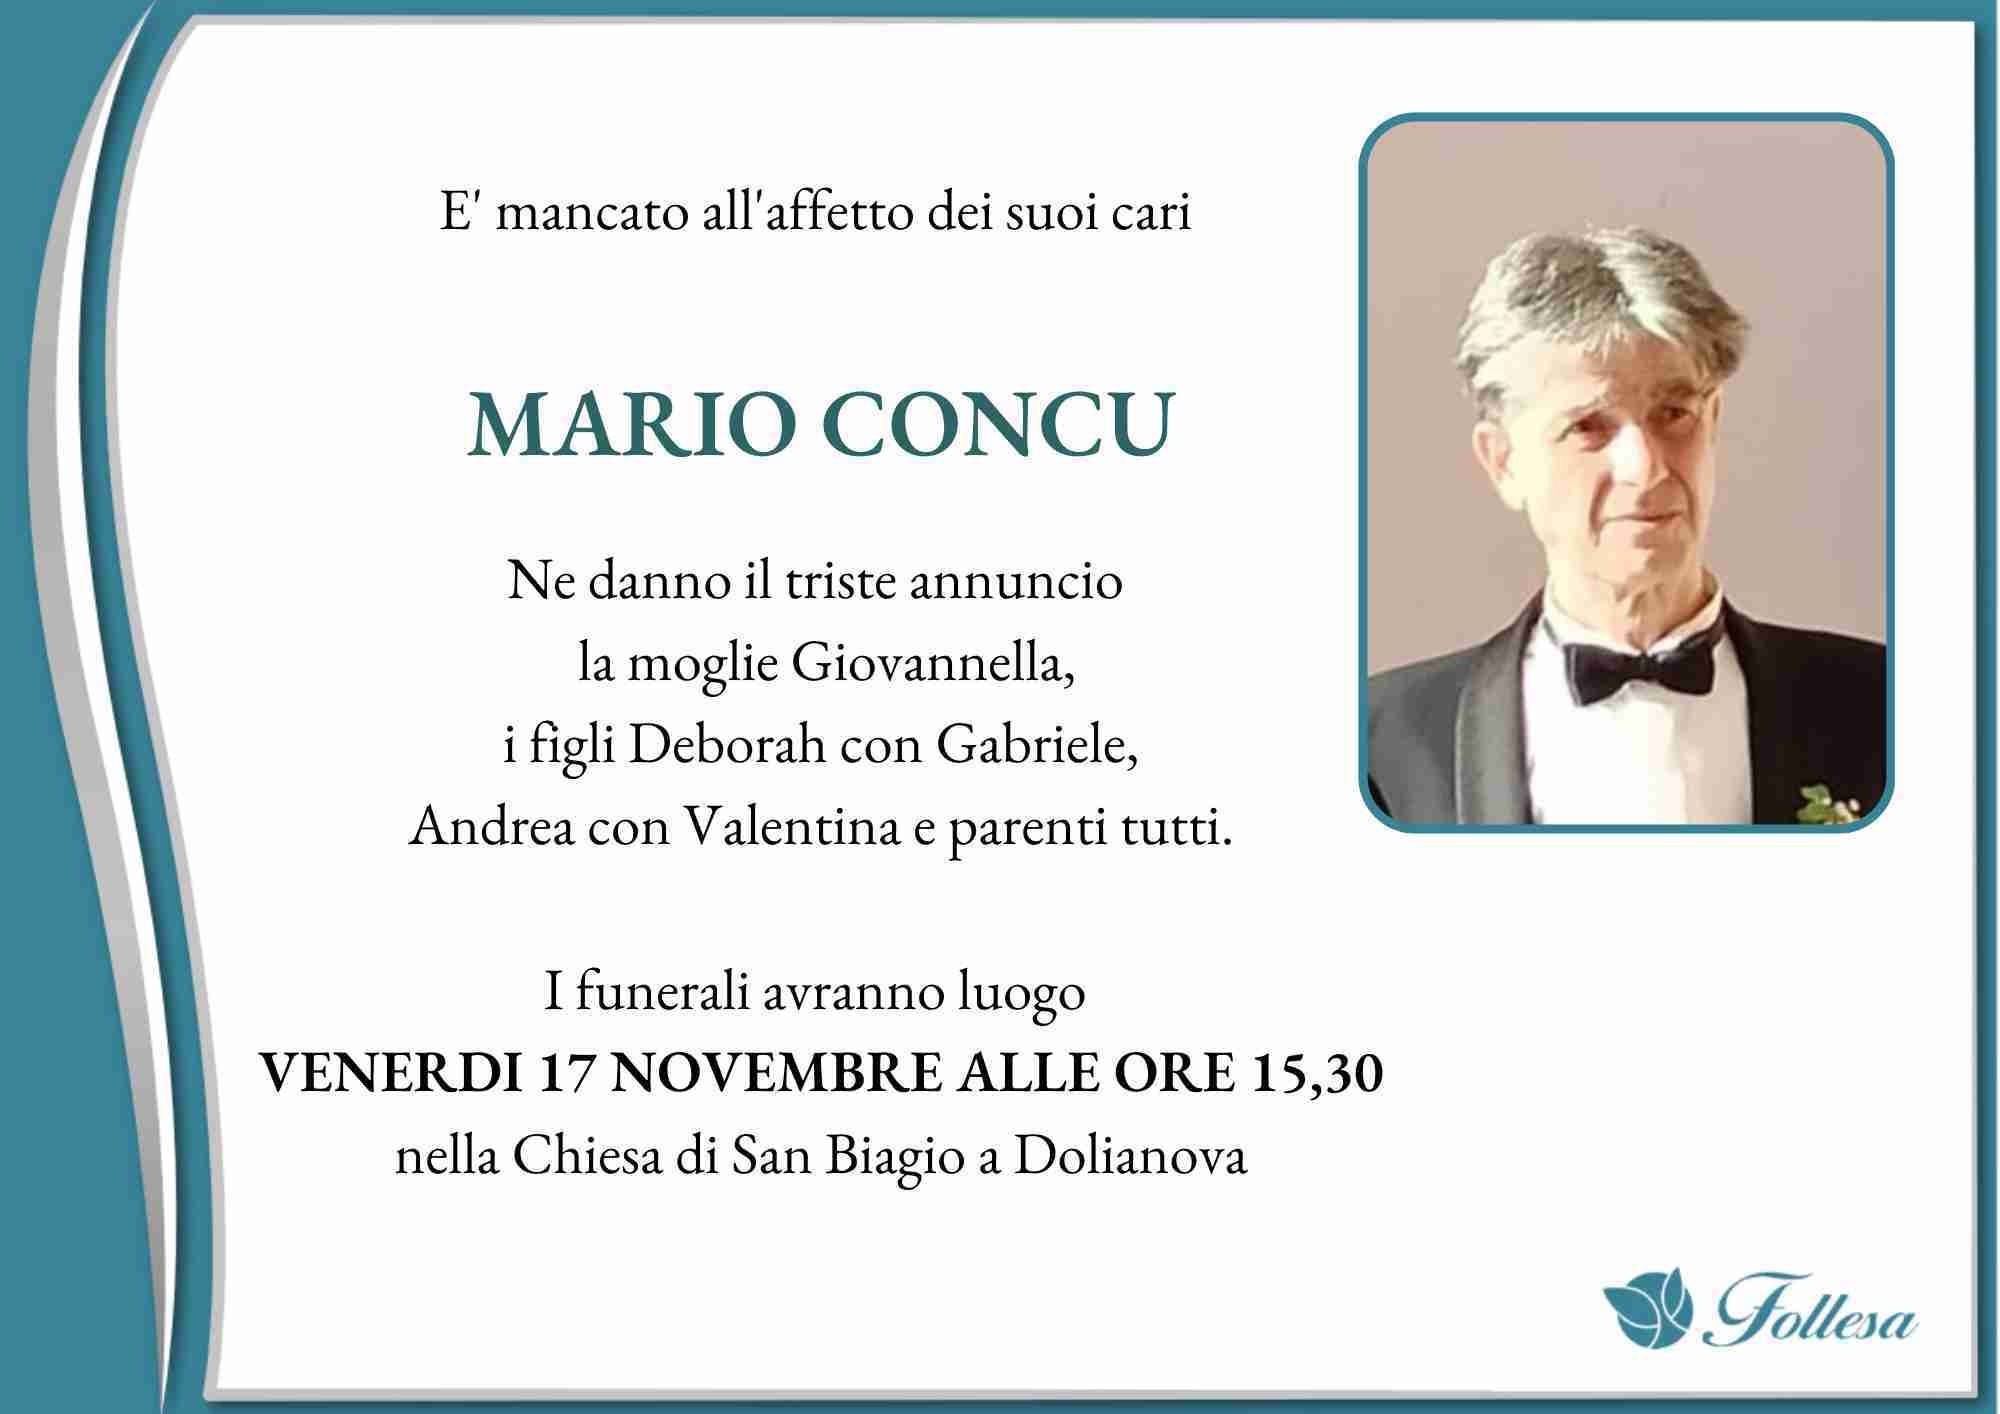 Mario Concu